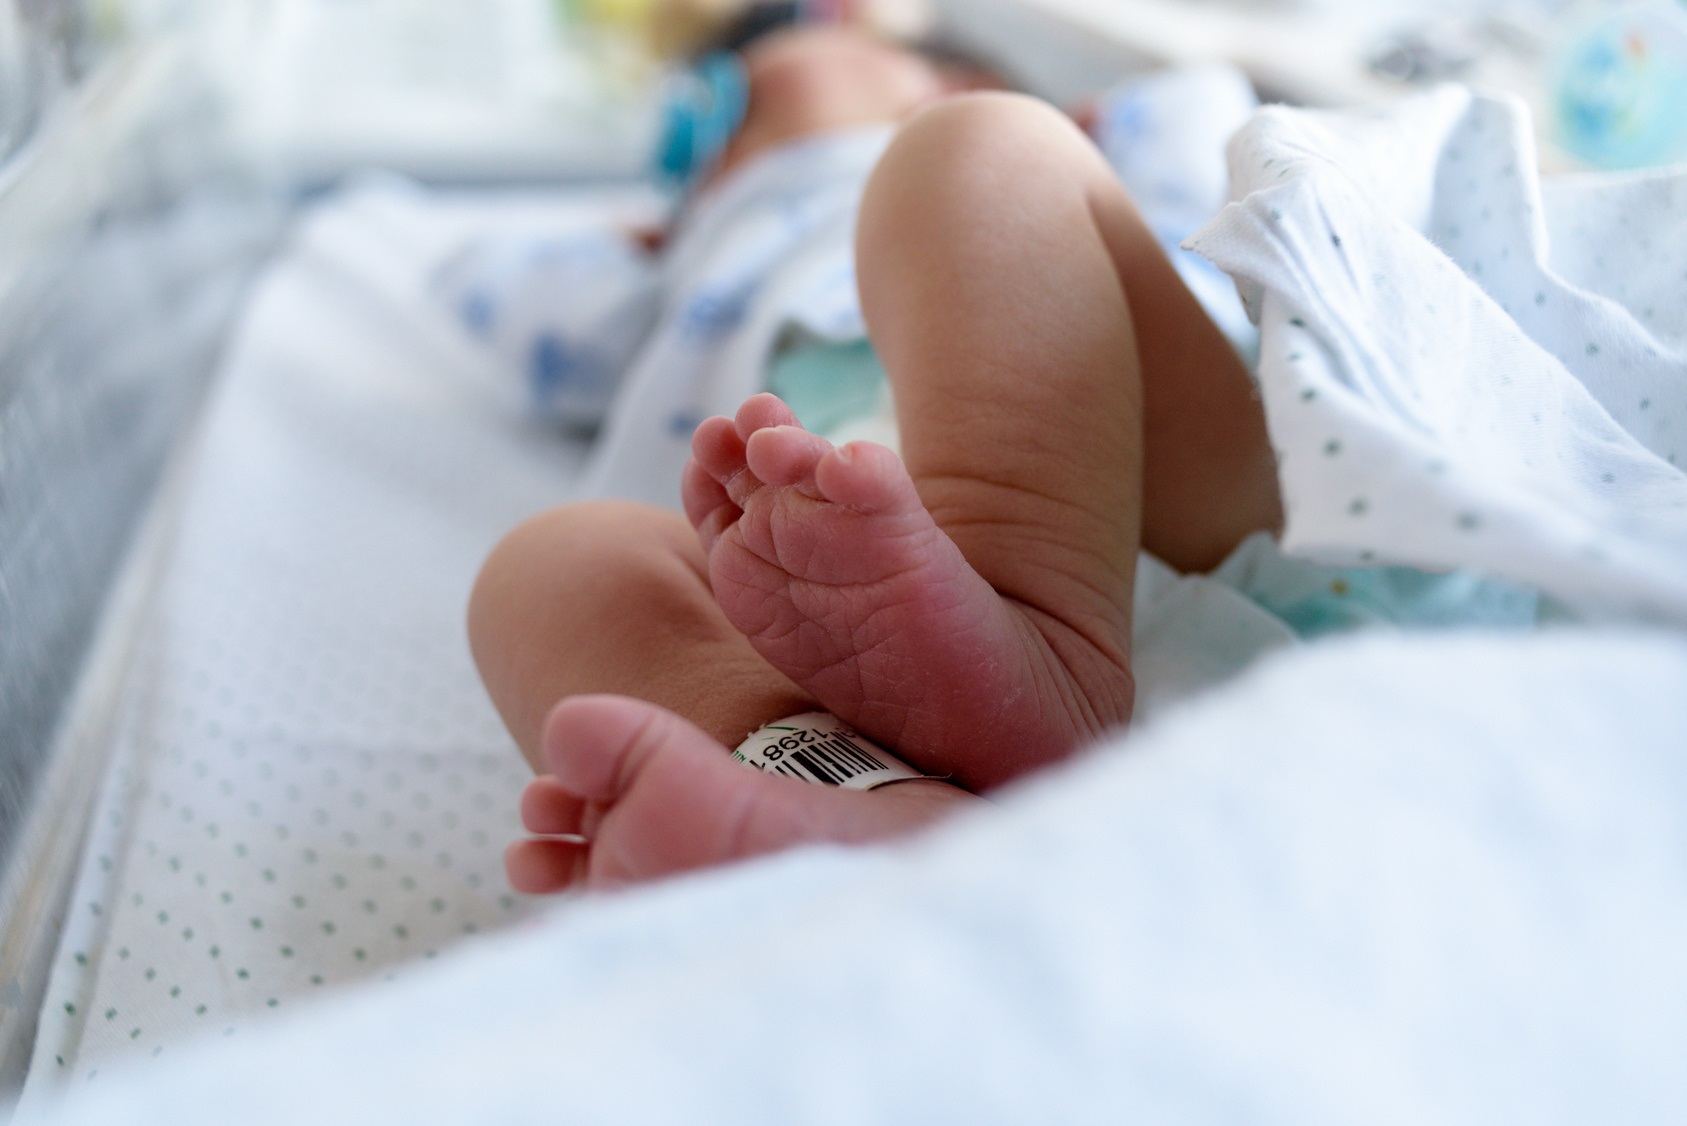 L’agence Santé publique France a publié trois rapports sur les enfants nés sans main ou sans bras dans le Morbihan, la Loire-Atlantique et l’Ain. © jonastorres, Fotolia